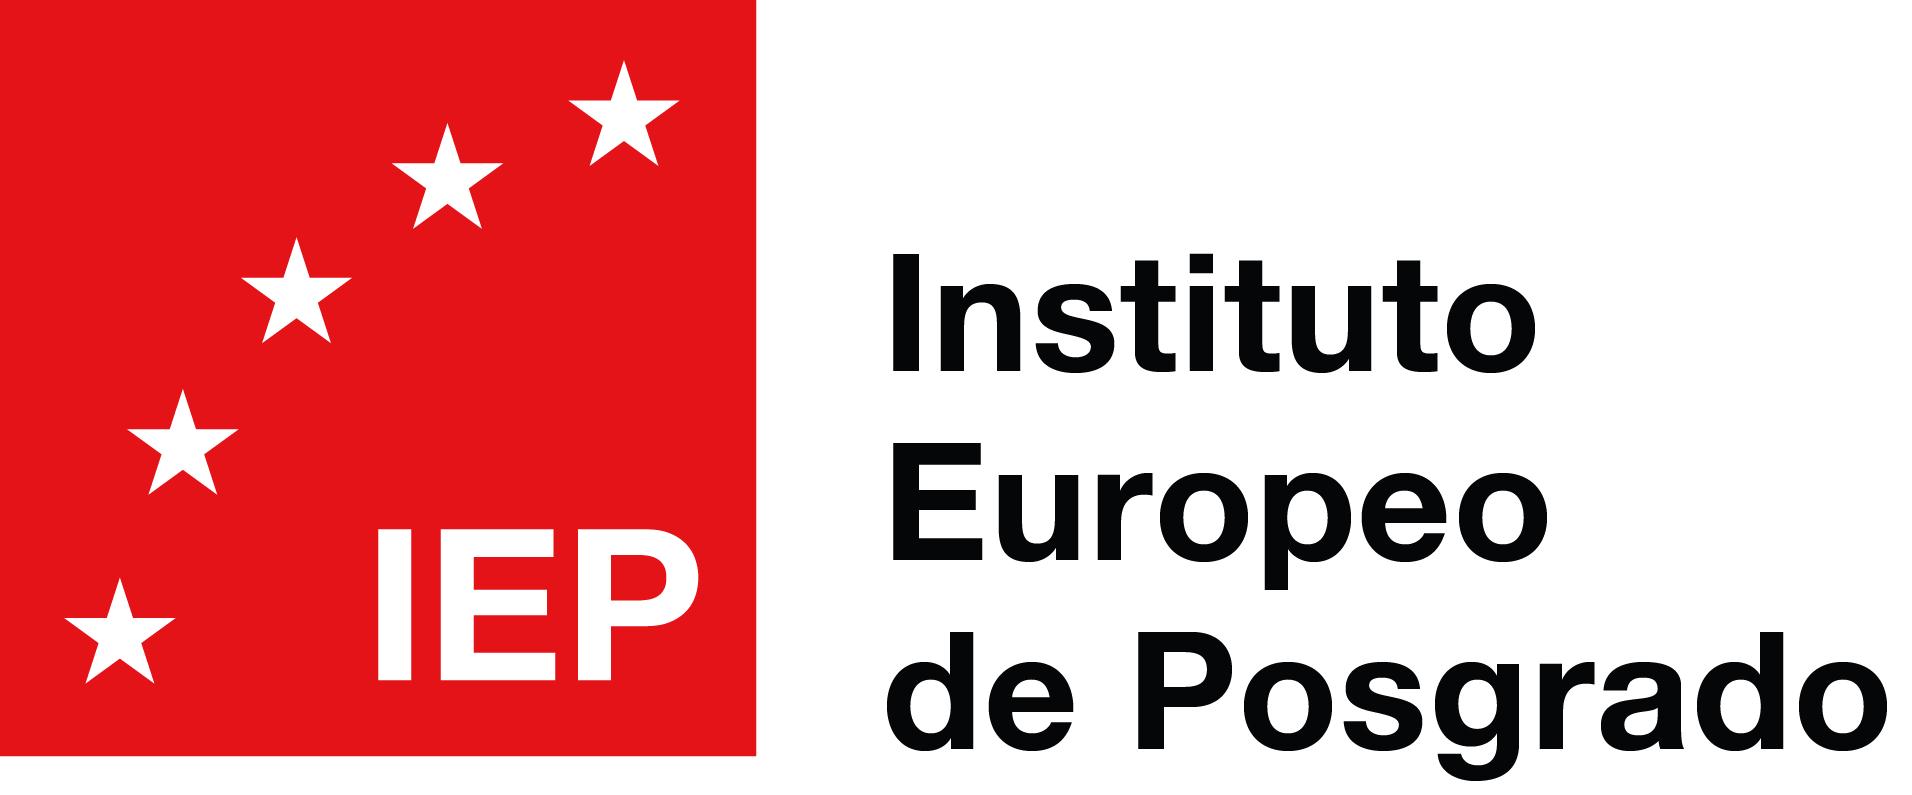 Máster Privado Especialidad Sistemas Integrados de Gestión (HSEQ) - IEP - Instituto Europeo de Posgrado